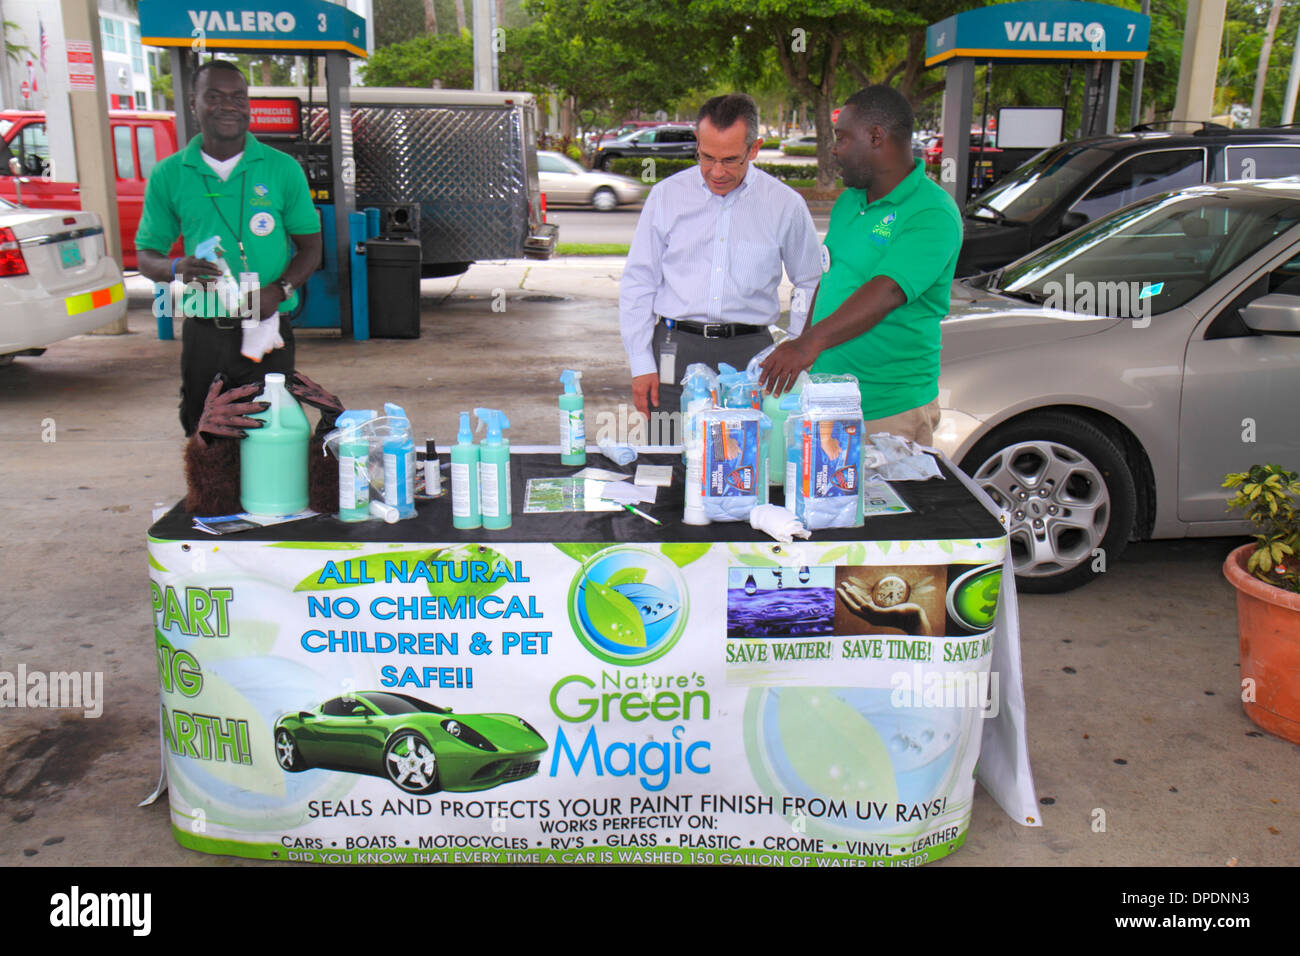 Miami Florida,distributore di benzina,benzina,benzina,benzina,uomo nero maschio,venditore,vendita,spiegazione,magia verde della natura,sigillante,protezione raggi UV,auto,au Foto Stock